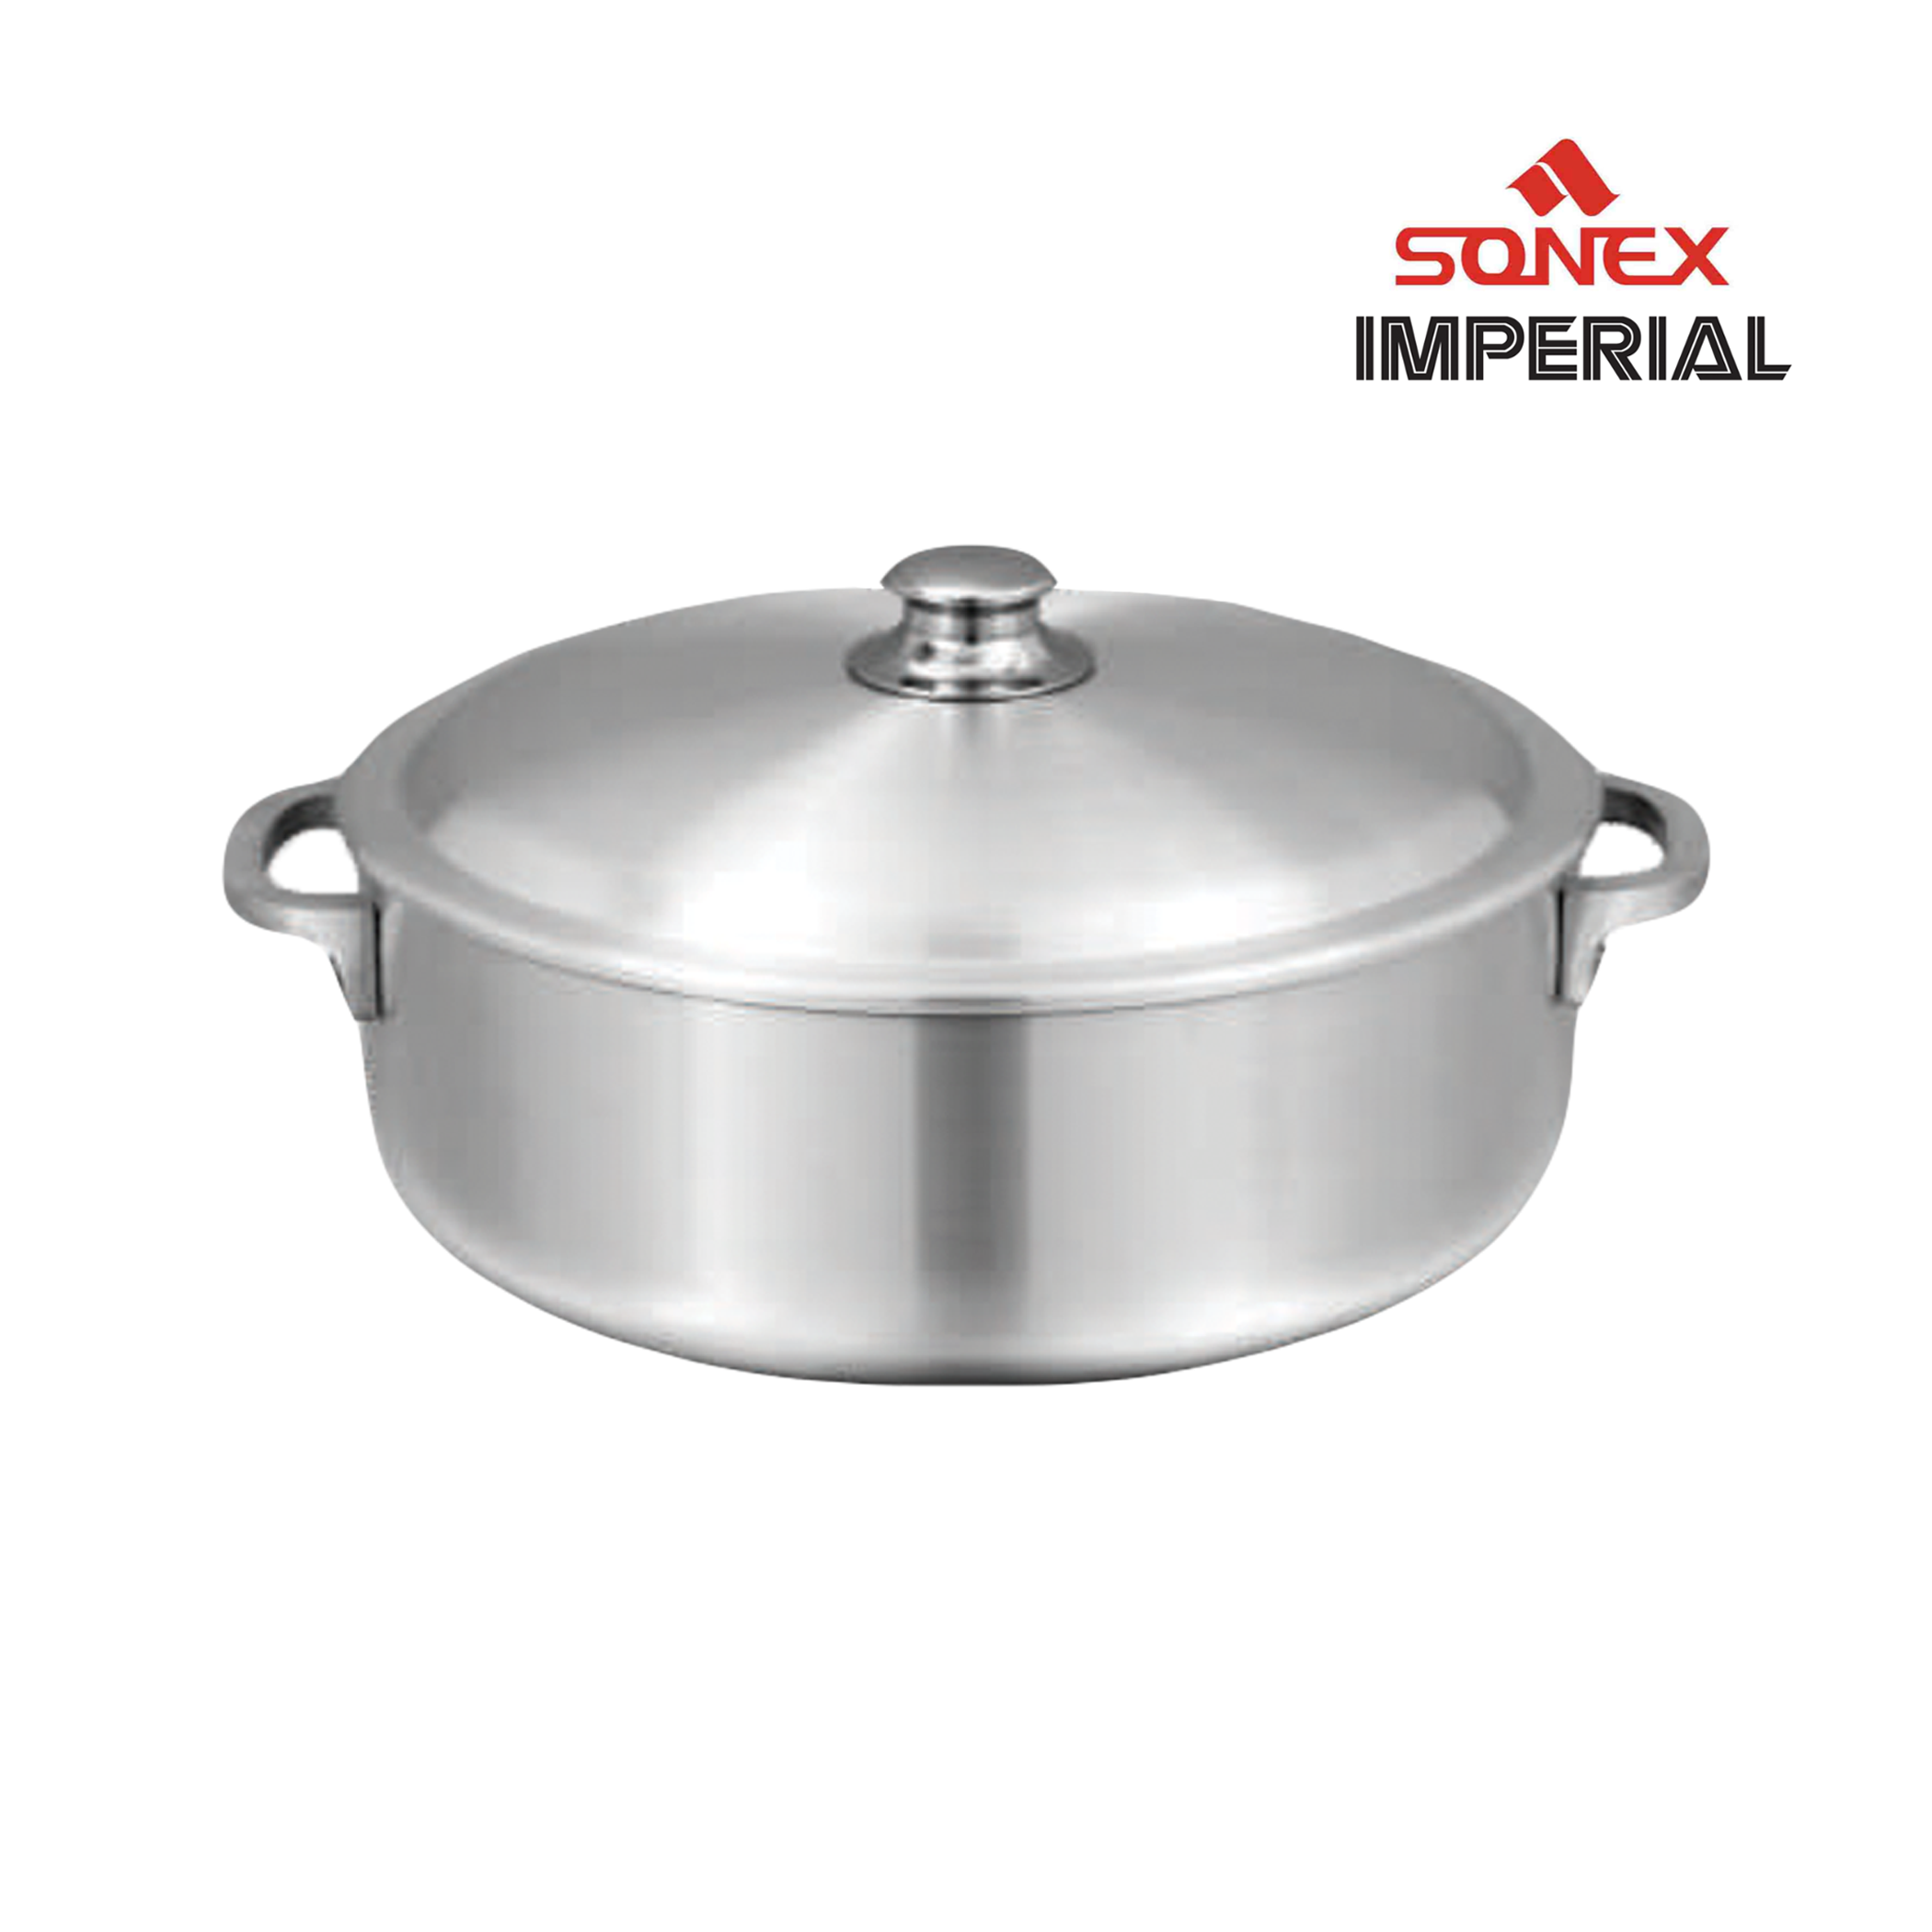 Sonex Imperial Aluminum Pot 5.5 Liters